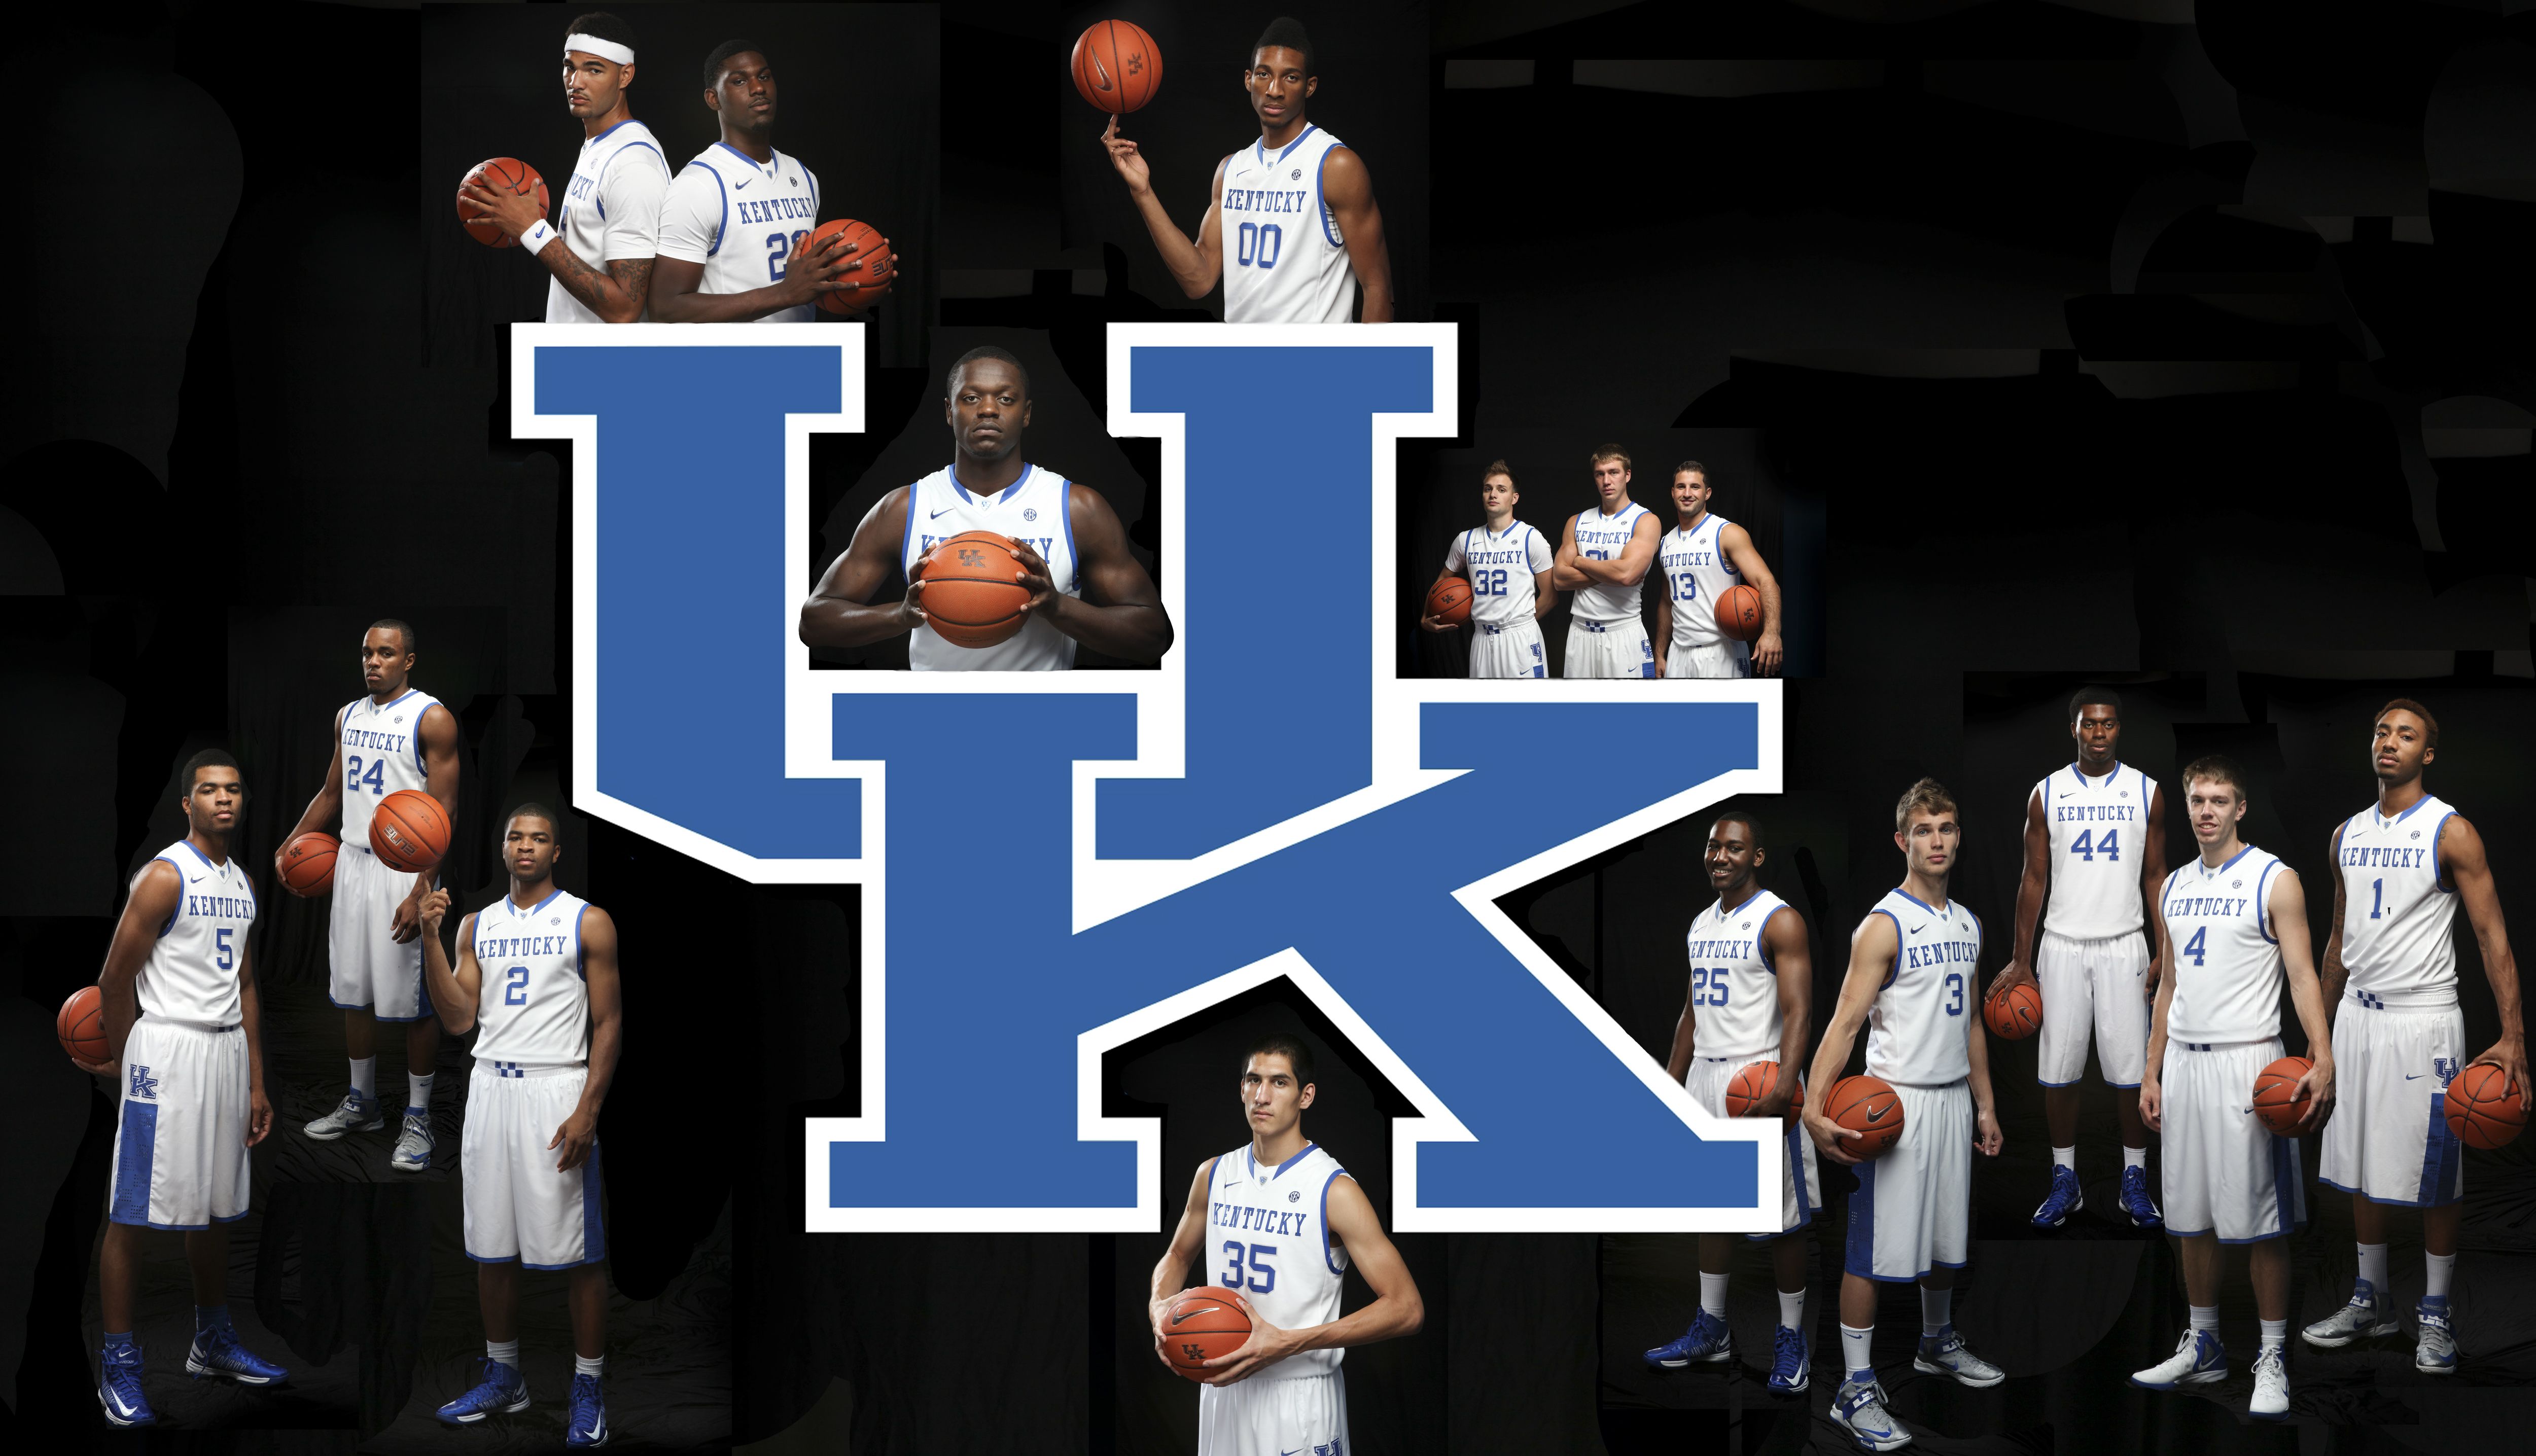 Photo: New desktop wallpaper of your 2013-2014 Kentucky Wildcats